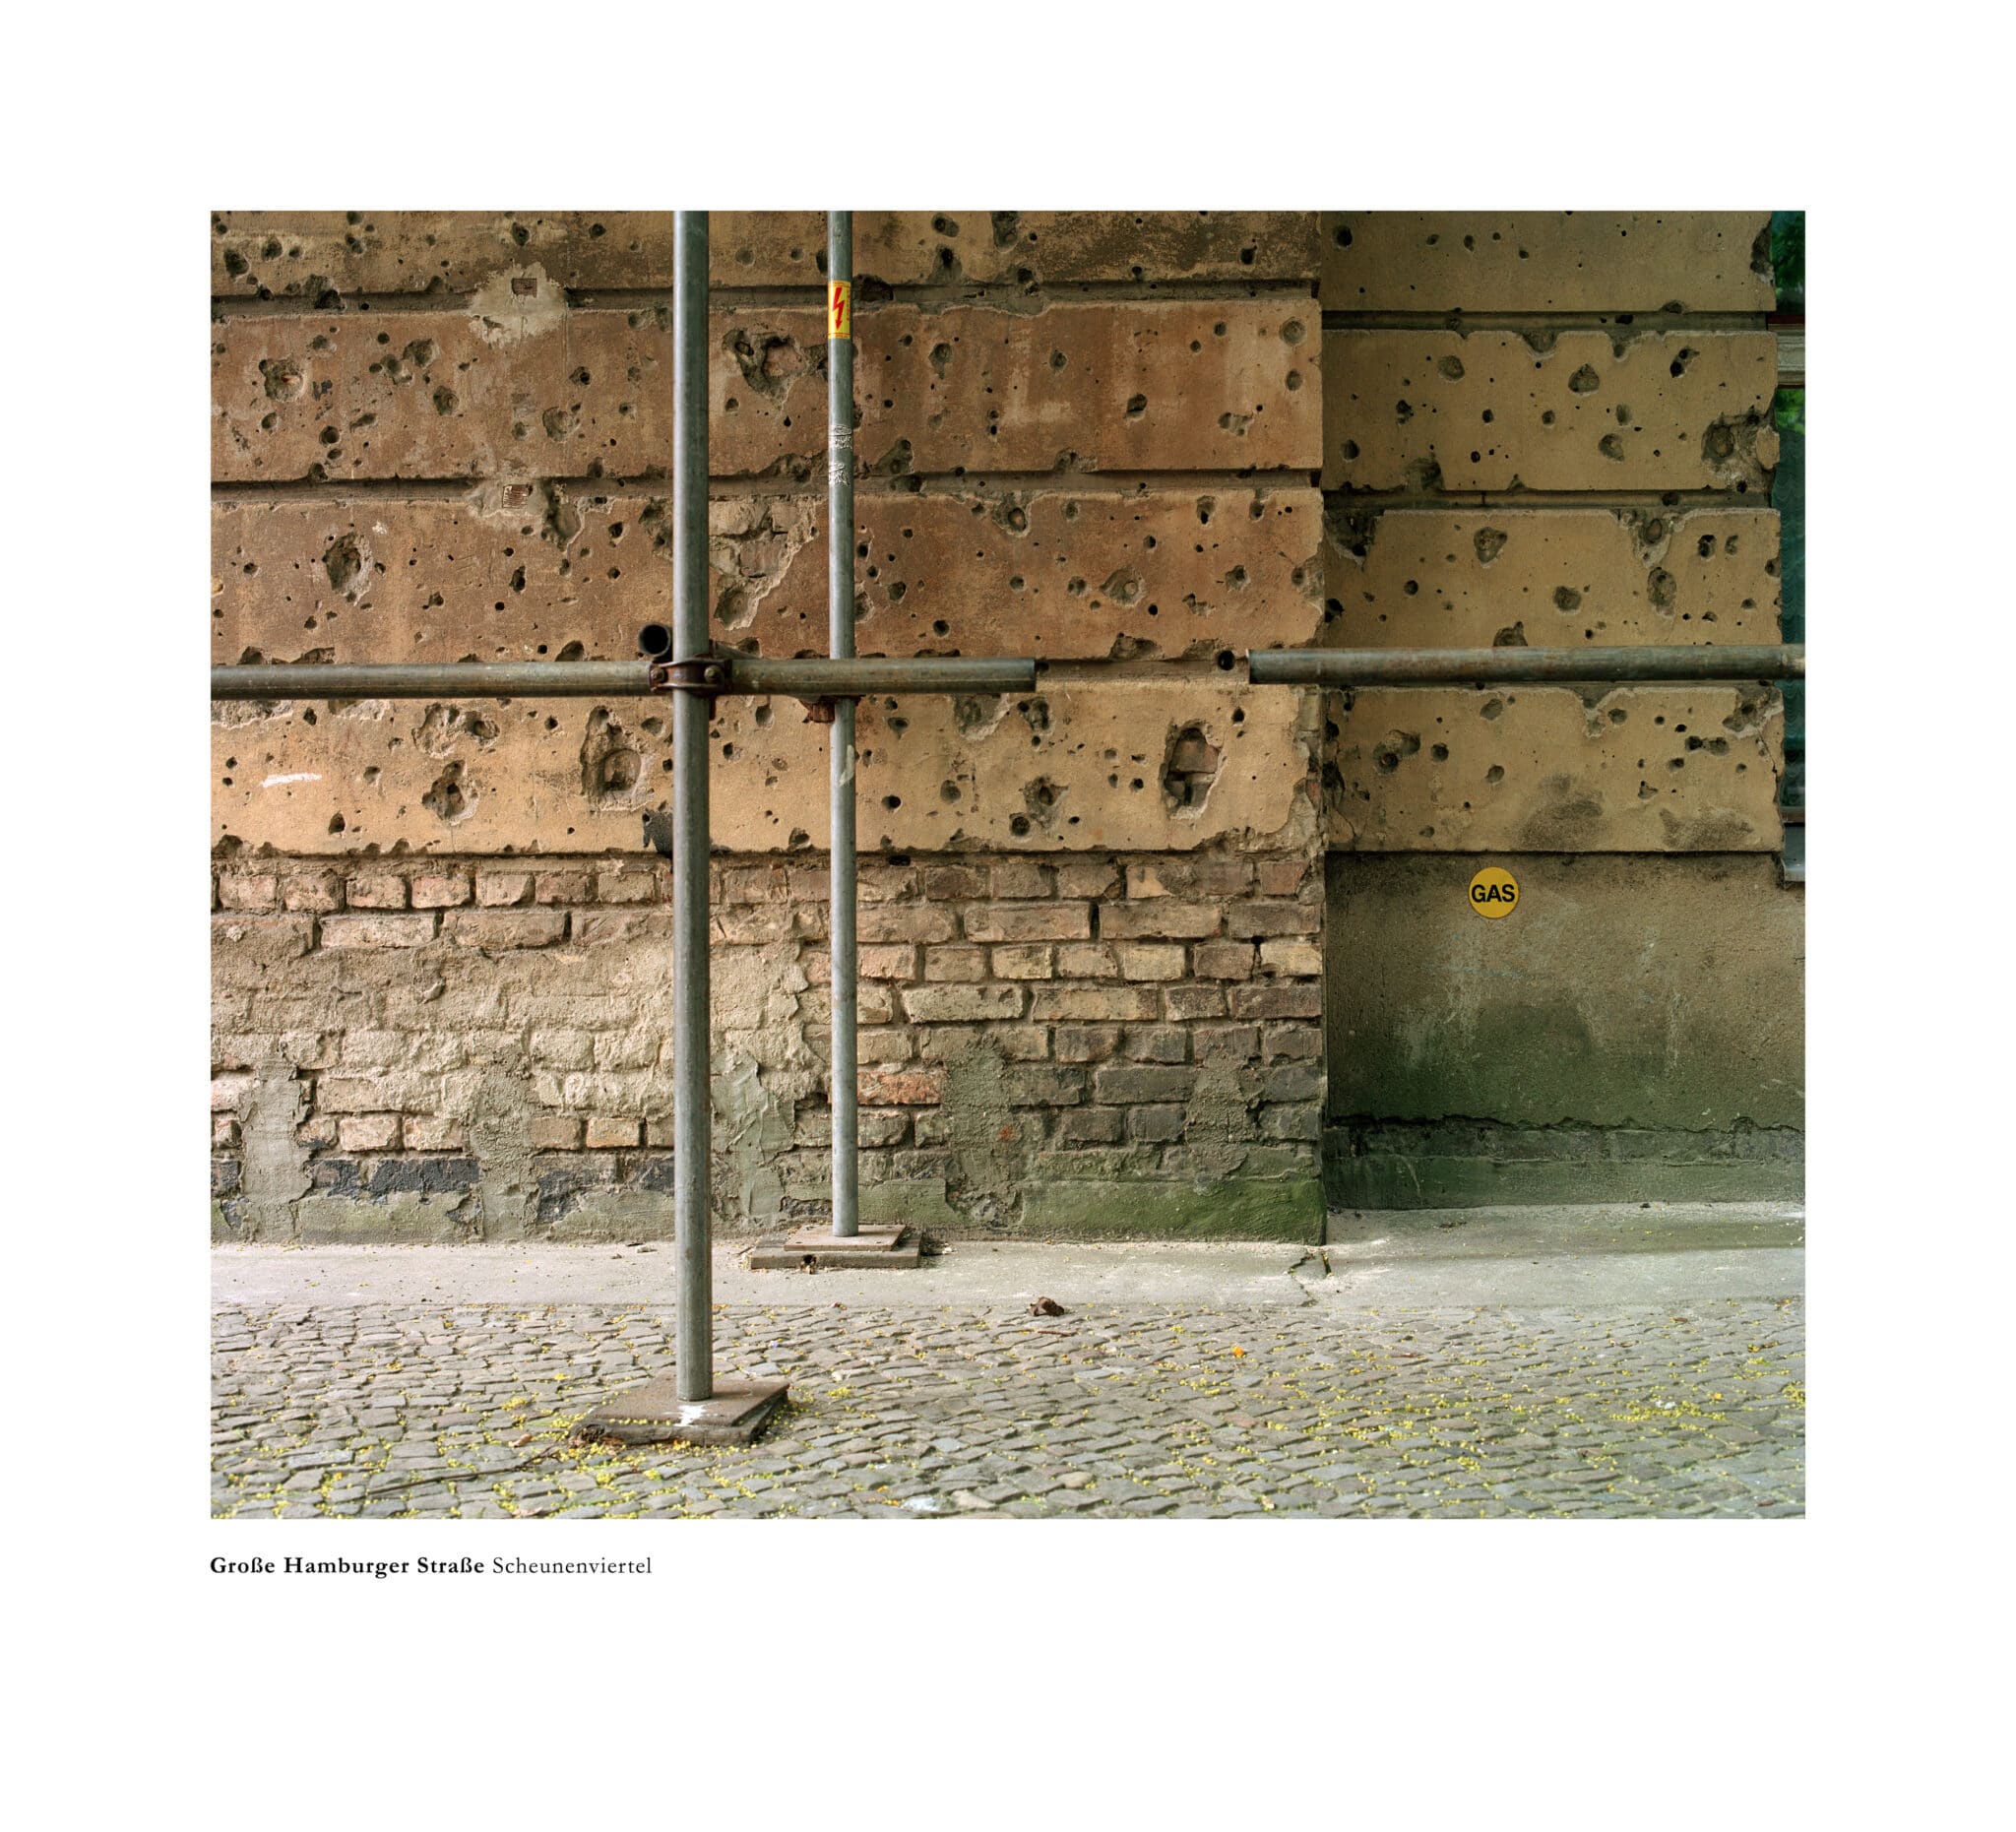 'Memoriales'. Grosse Hamburger Strasse, Scheunenviertel, Berlín, 2005. © Bleda y Rosa, VEGAP, Madrid, 2023